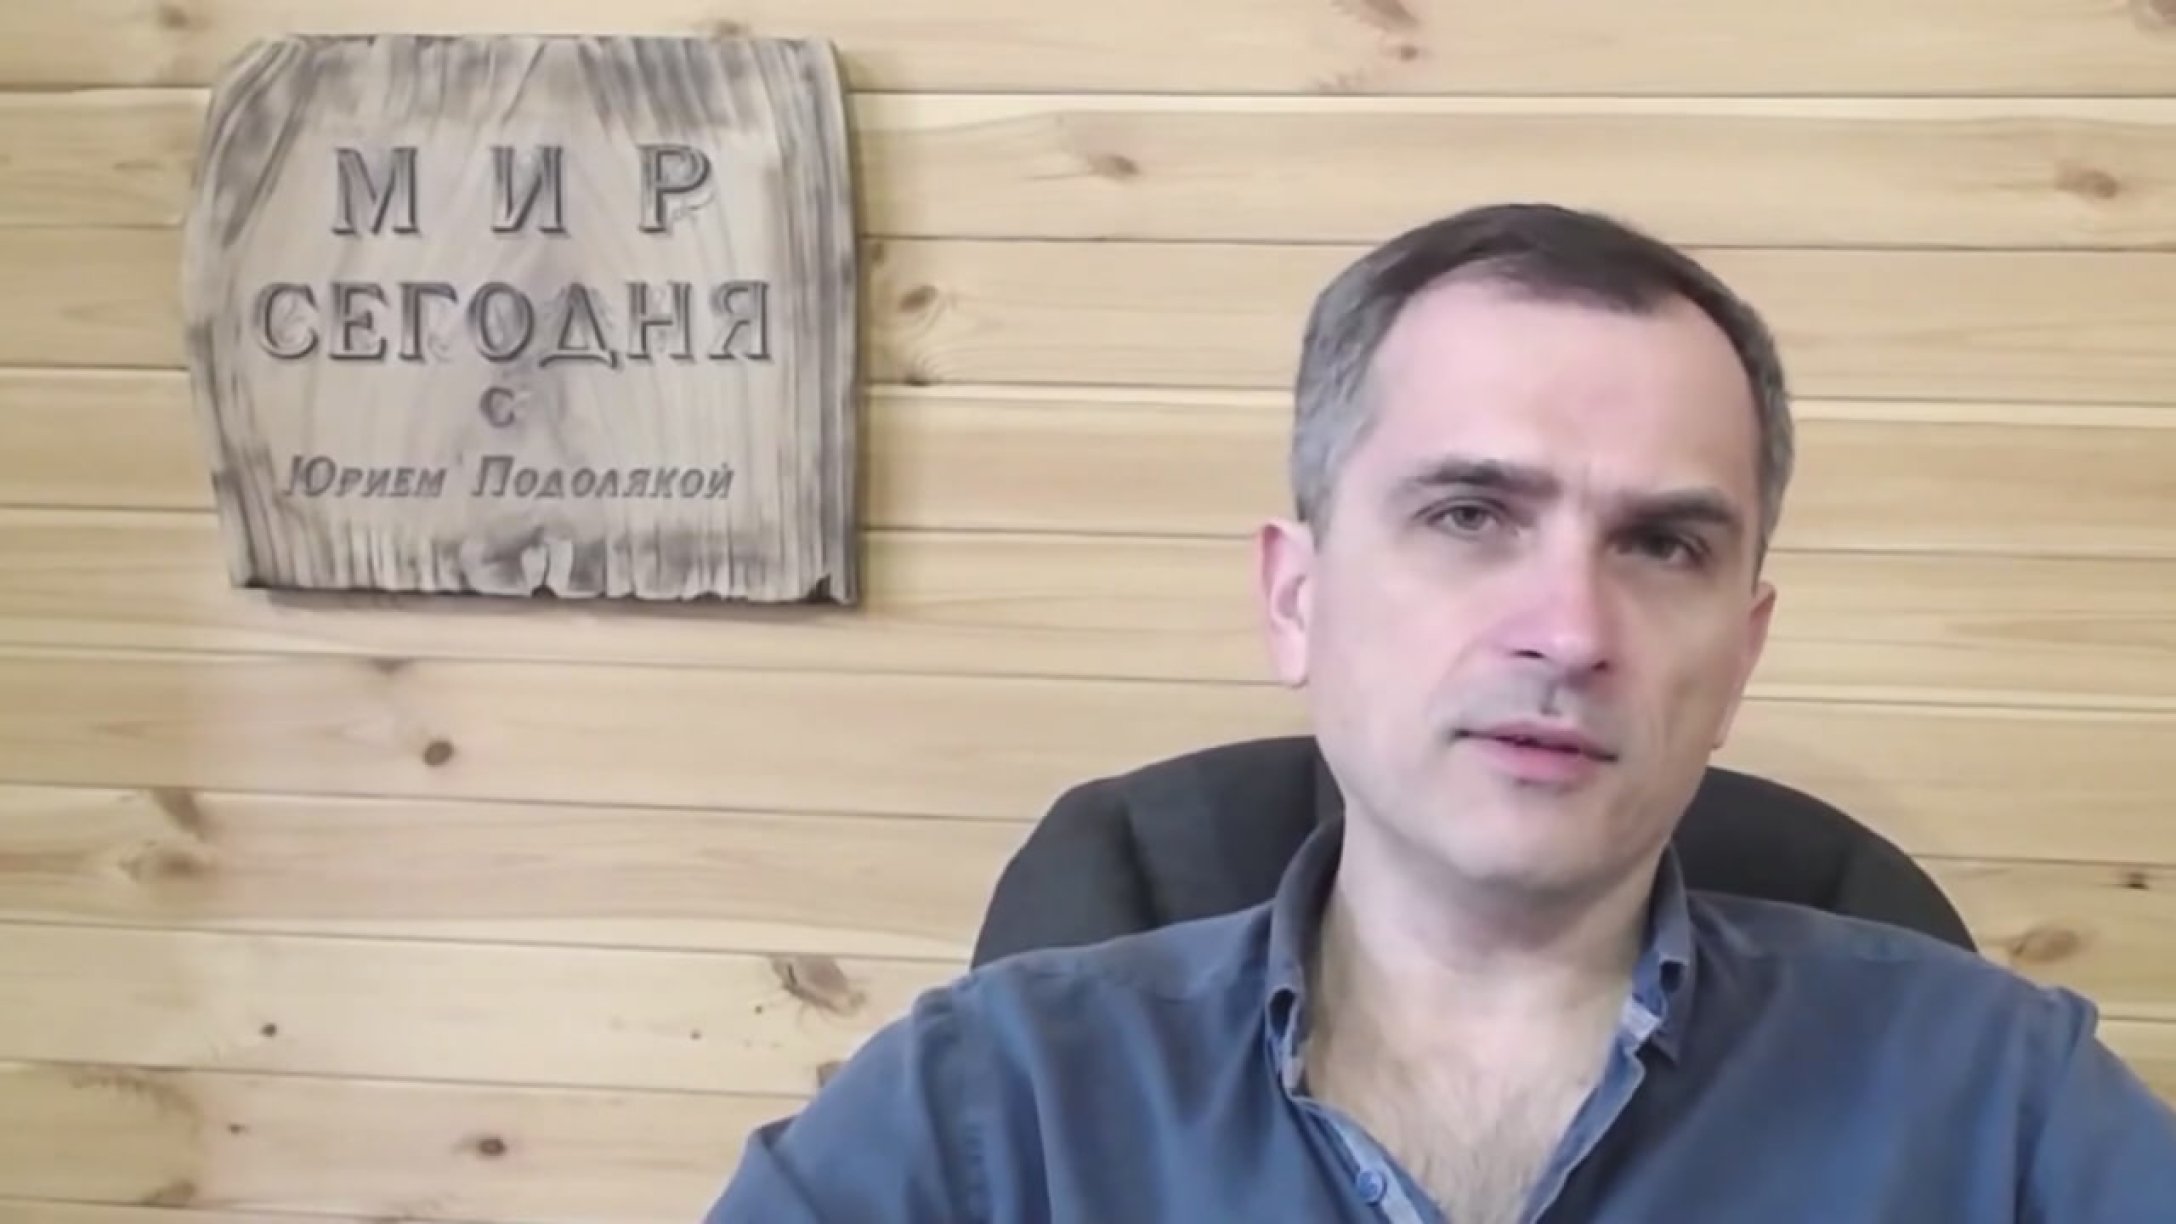 Сводки с украины на сегодня подоляк видео